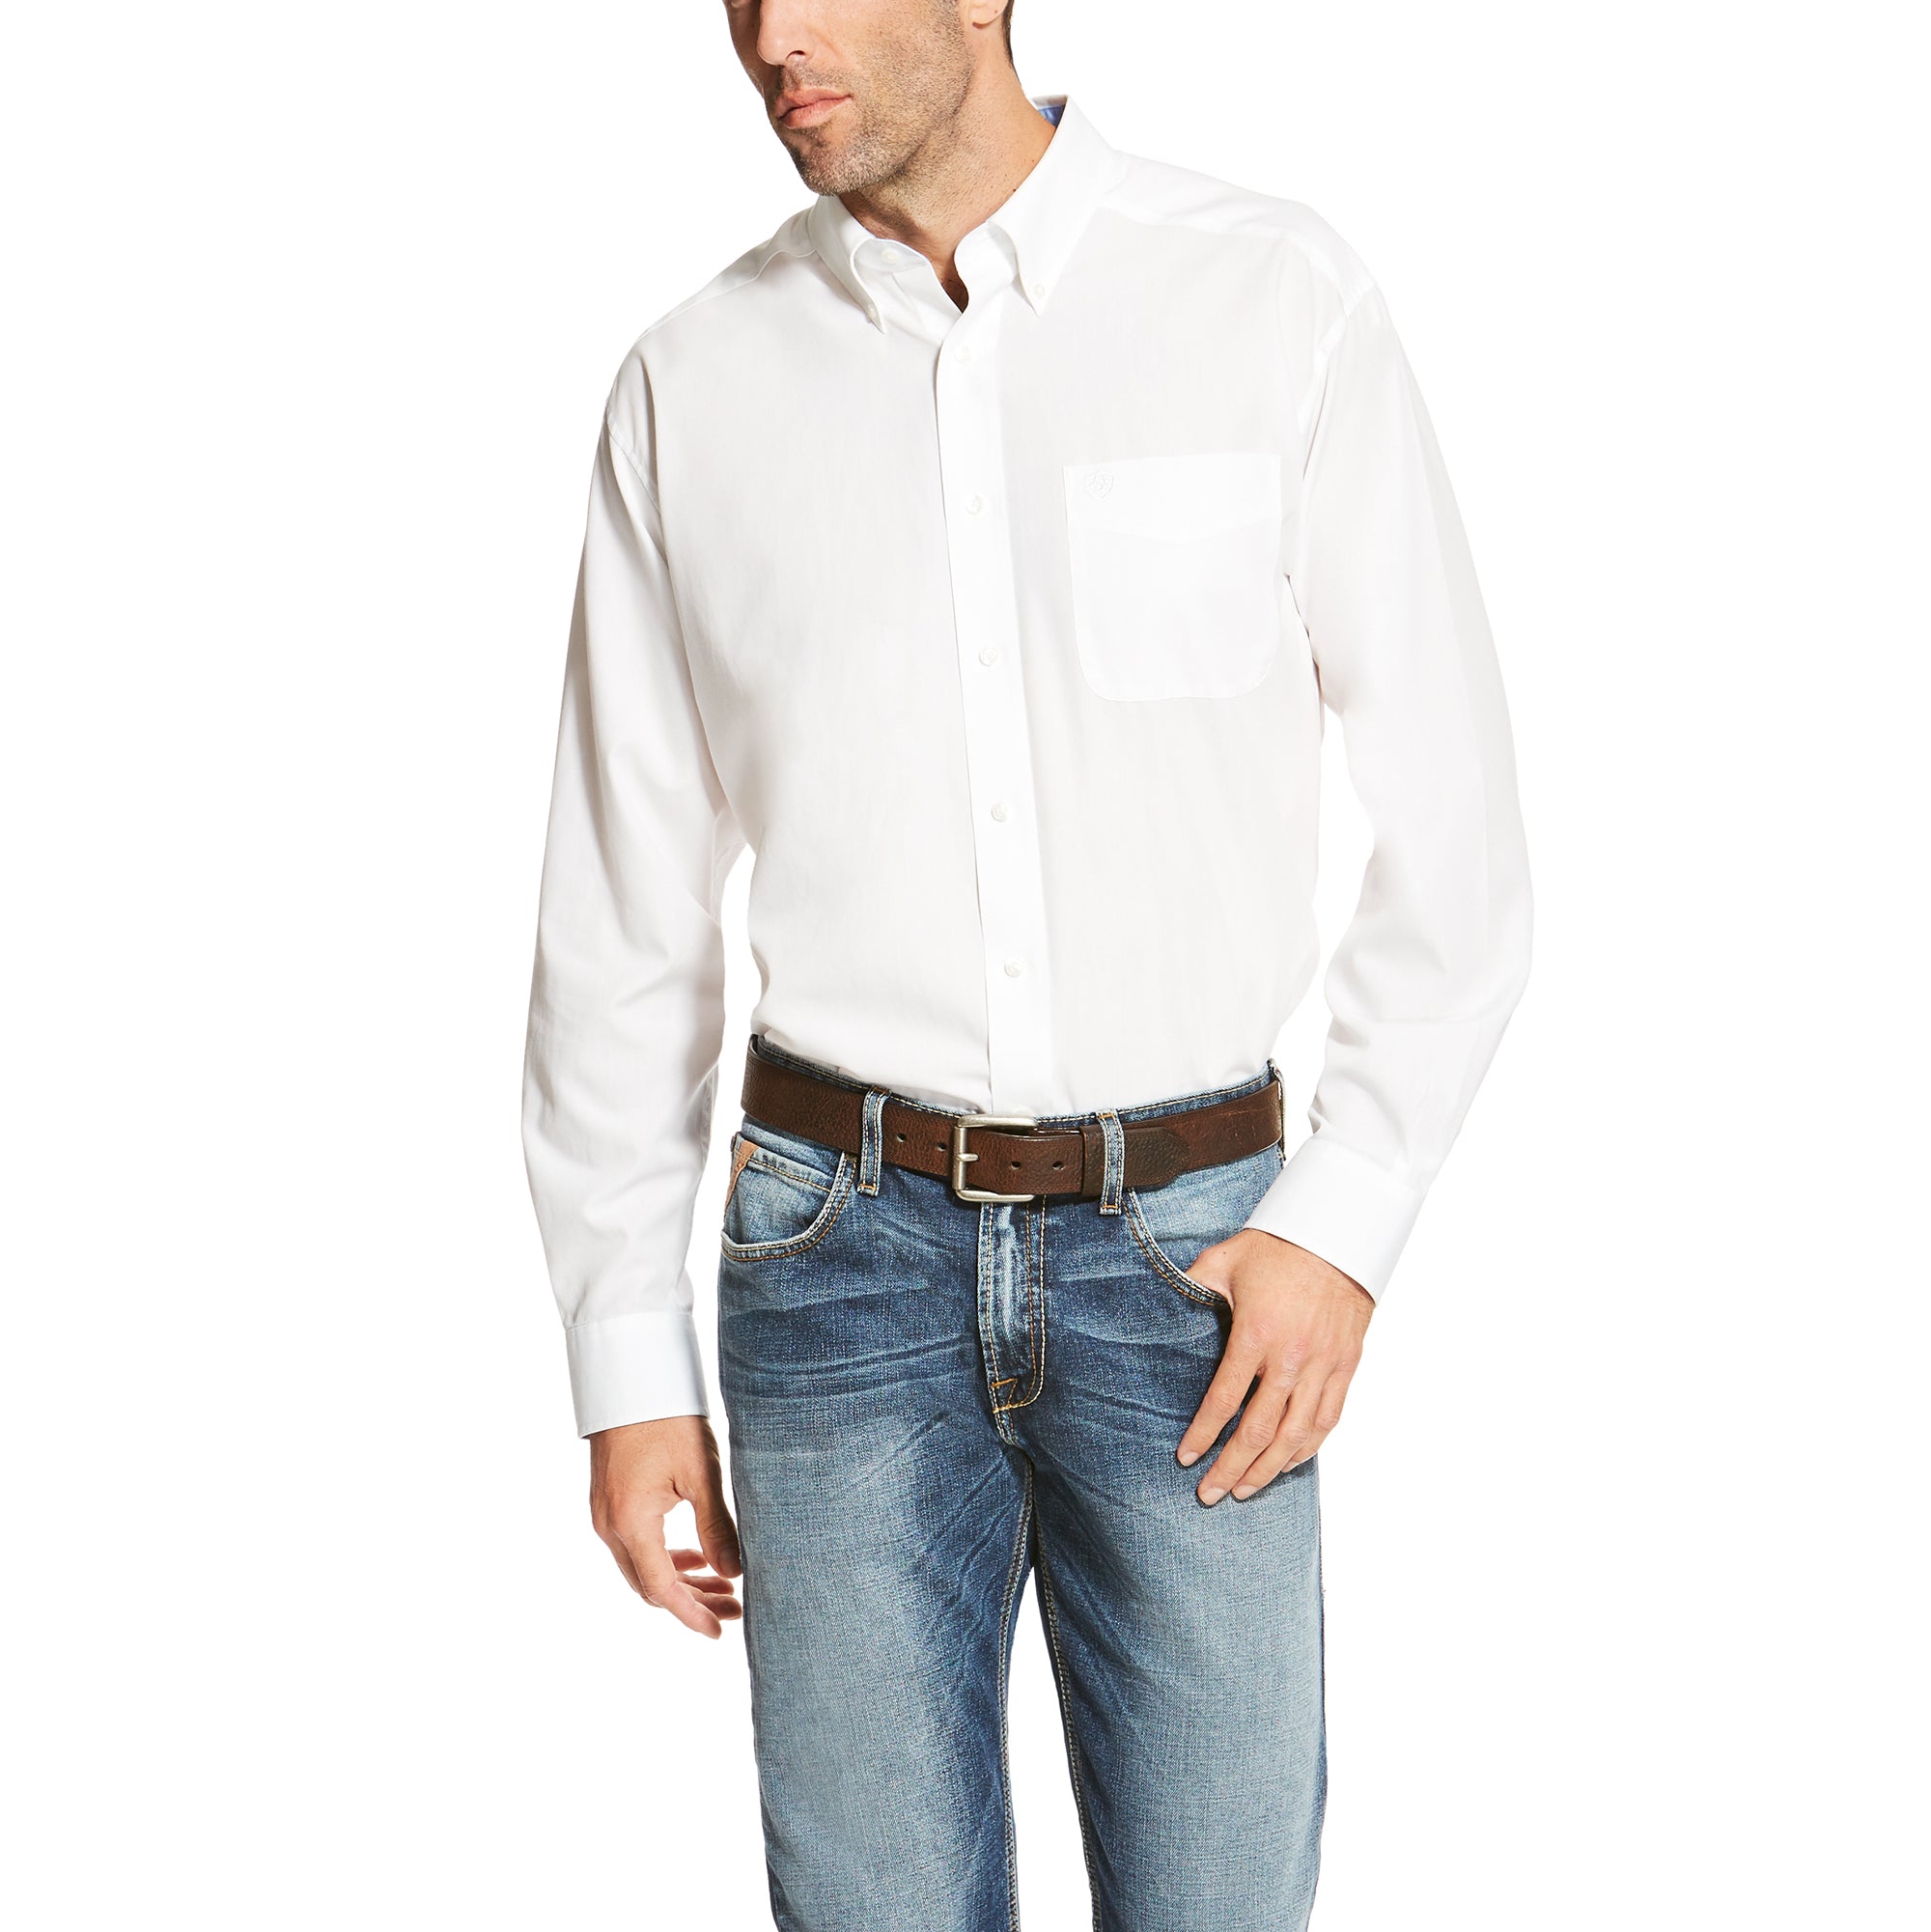 Ariat T-shirt à manches longues uni sans plis blanc pour hommes